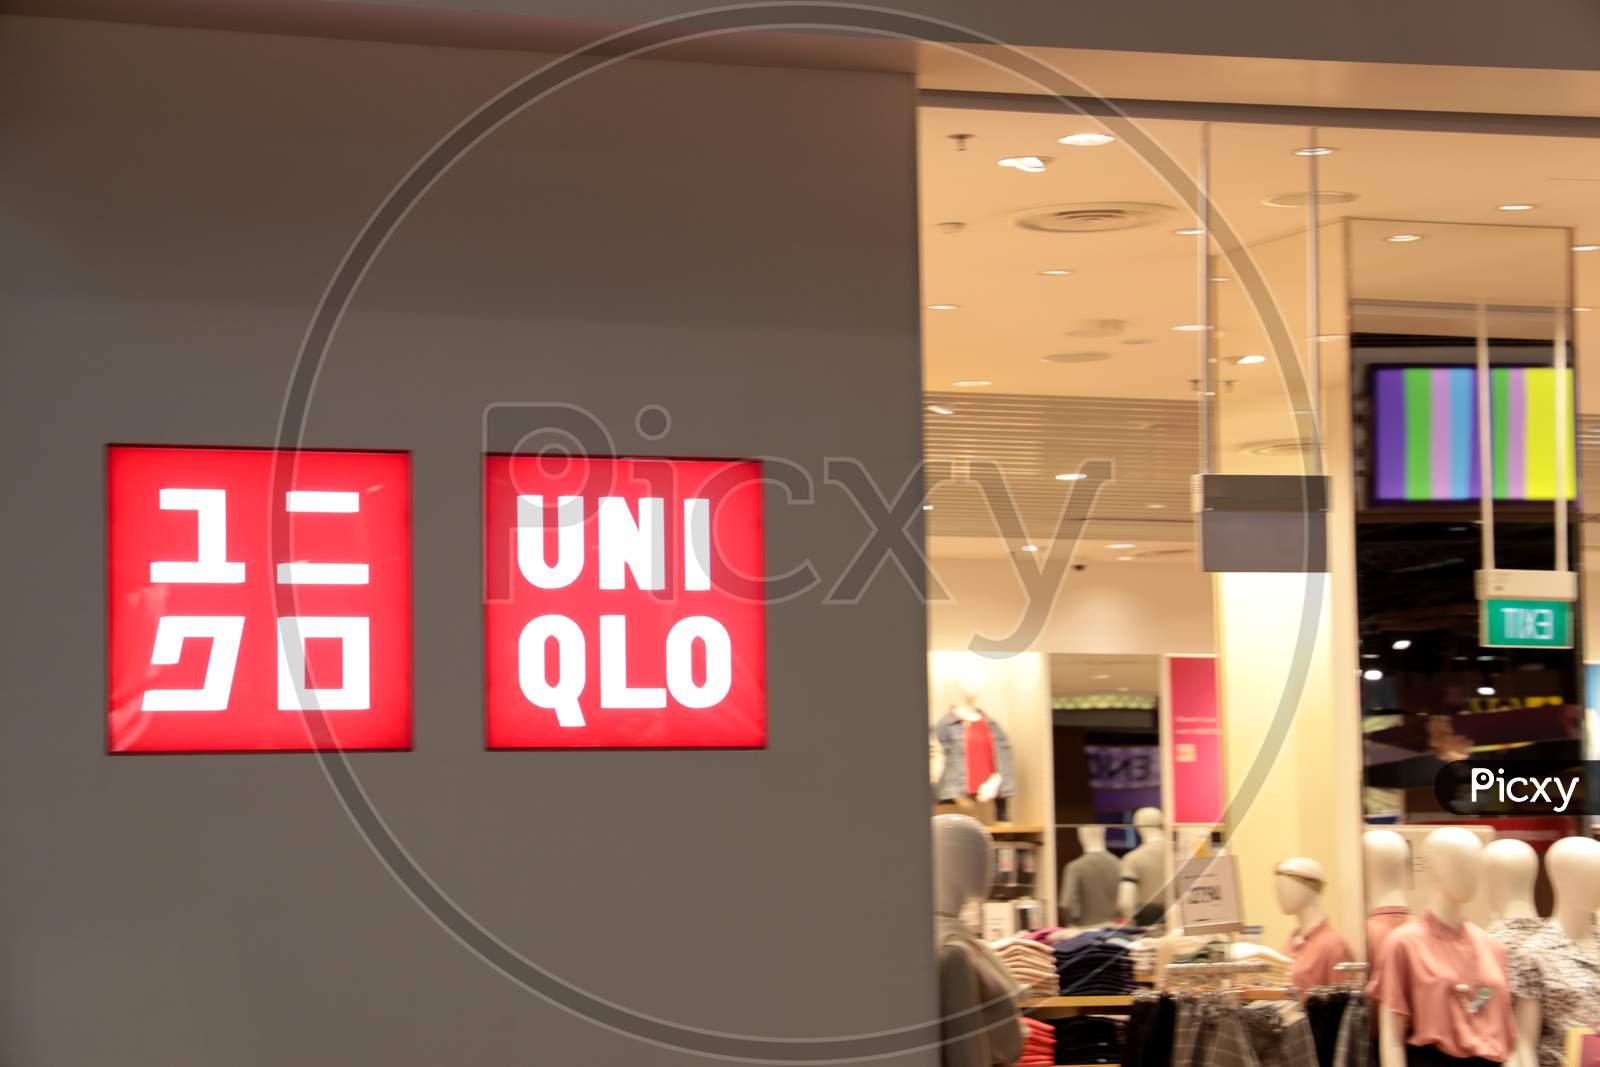 UNIQLO Woman Customized Fashion Store At Changi Airport, Singapore